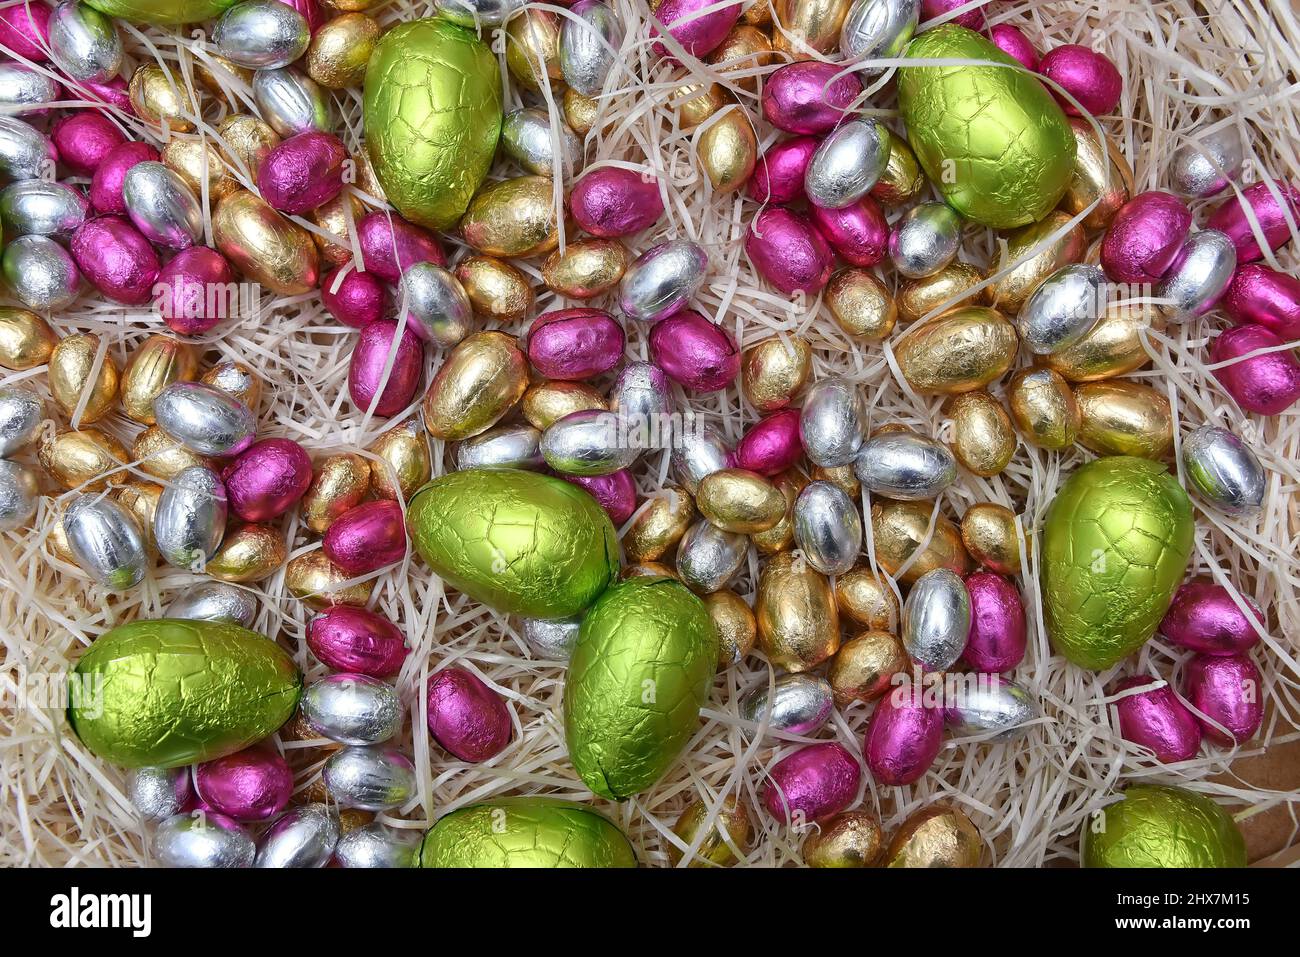 Stapel von bunten Pastellfolie umwickelten Schokoladen-ostereiern in Grün, Rosa, Gelb, Silber und Gold, auf blass gefürchtetem Rahmennest. Stockfoto